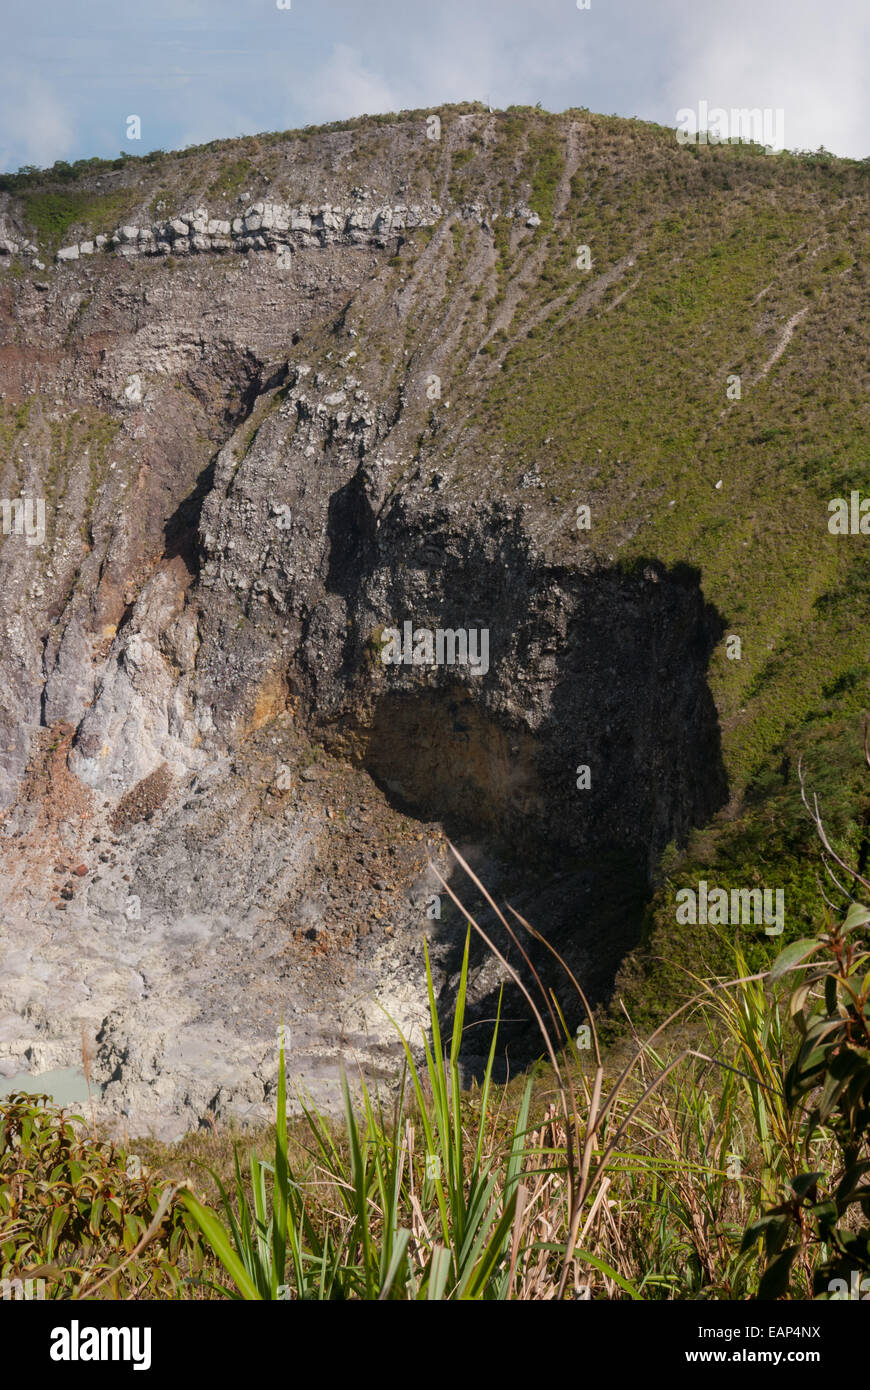 Caldera de Monte Mahawu, al norte de Sulawesi, Indonesia. Foto de stock